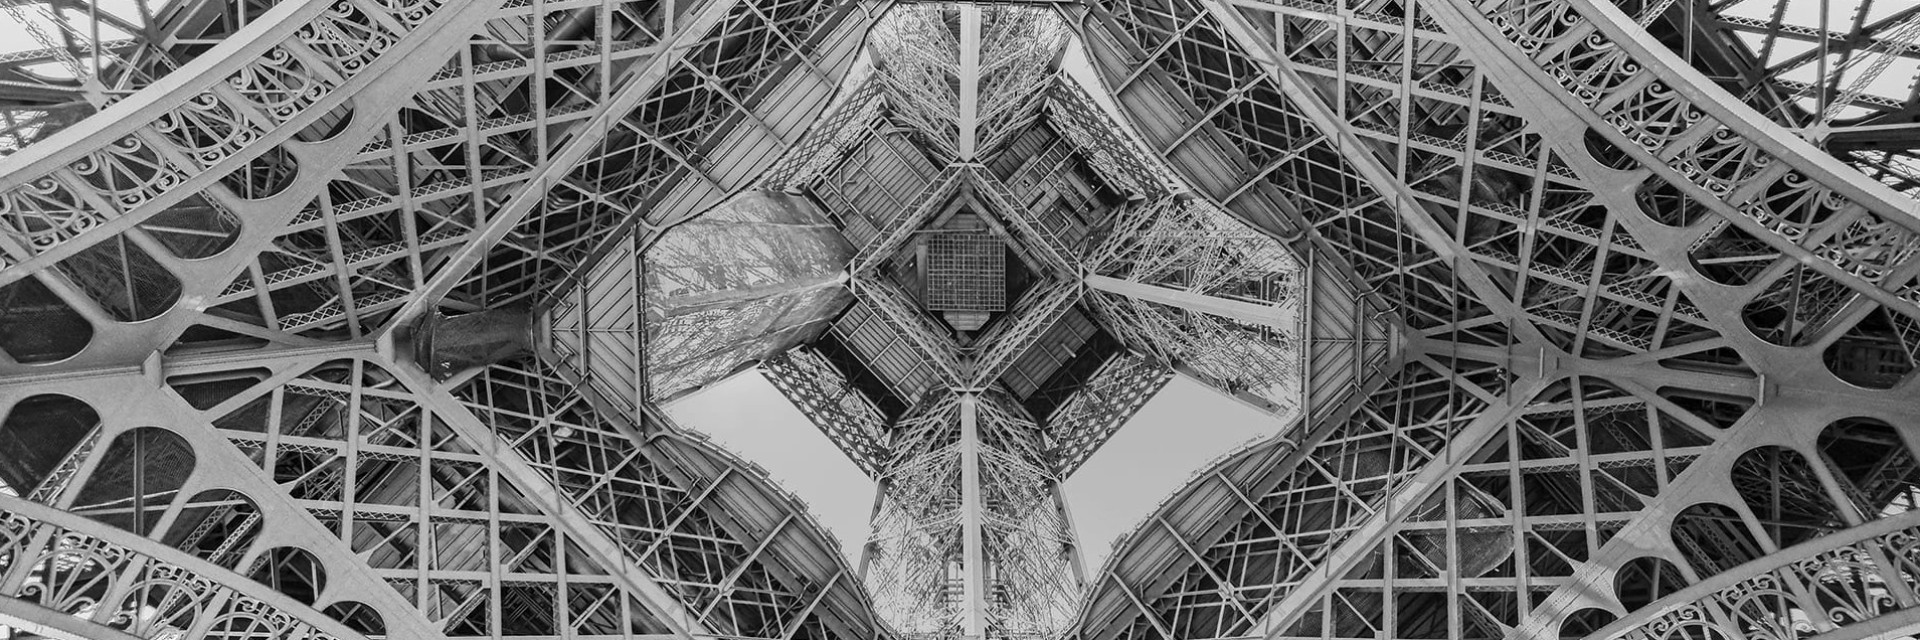 Tour Eiffel à Paris vue de dessous en illustration de l'héritage du savoir-faire et de l'innovation français - Histoire de l'usine EuroCave dans le nord de la France